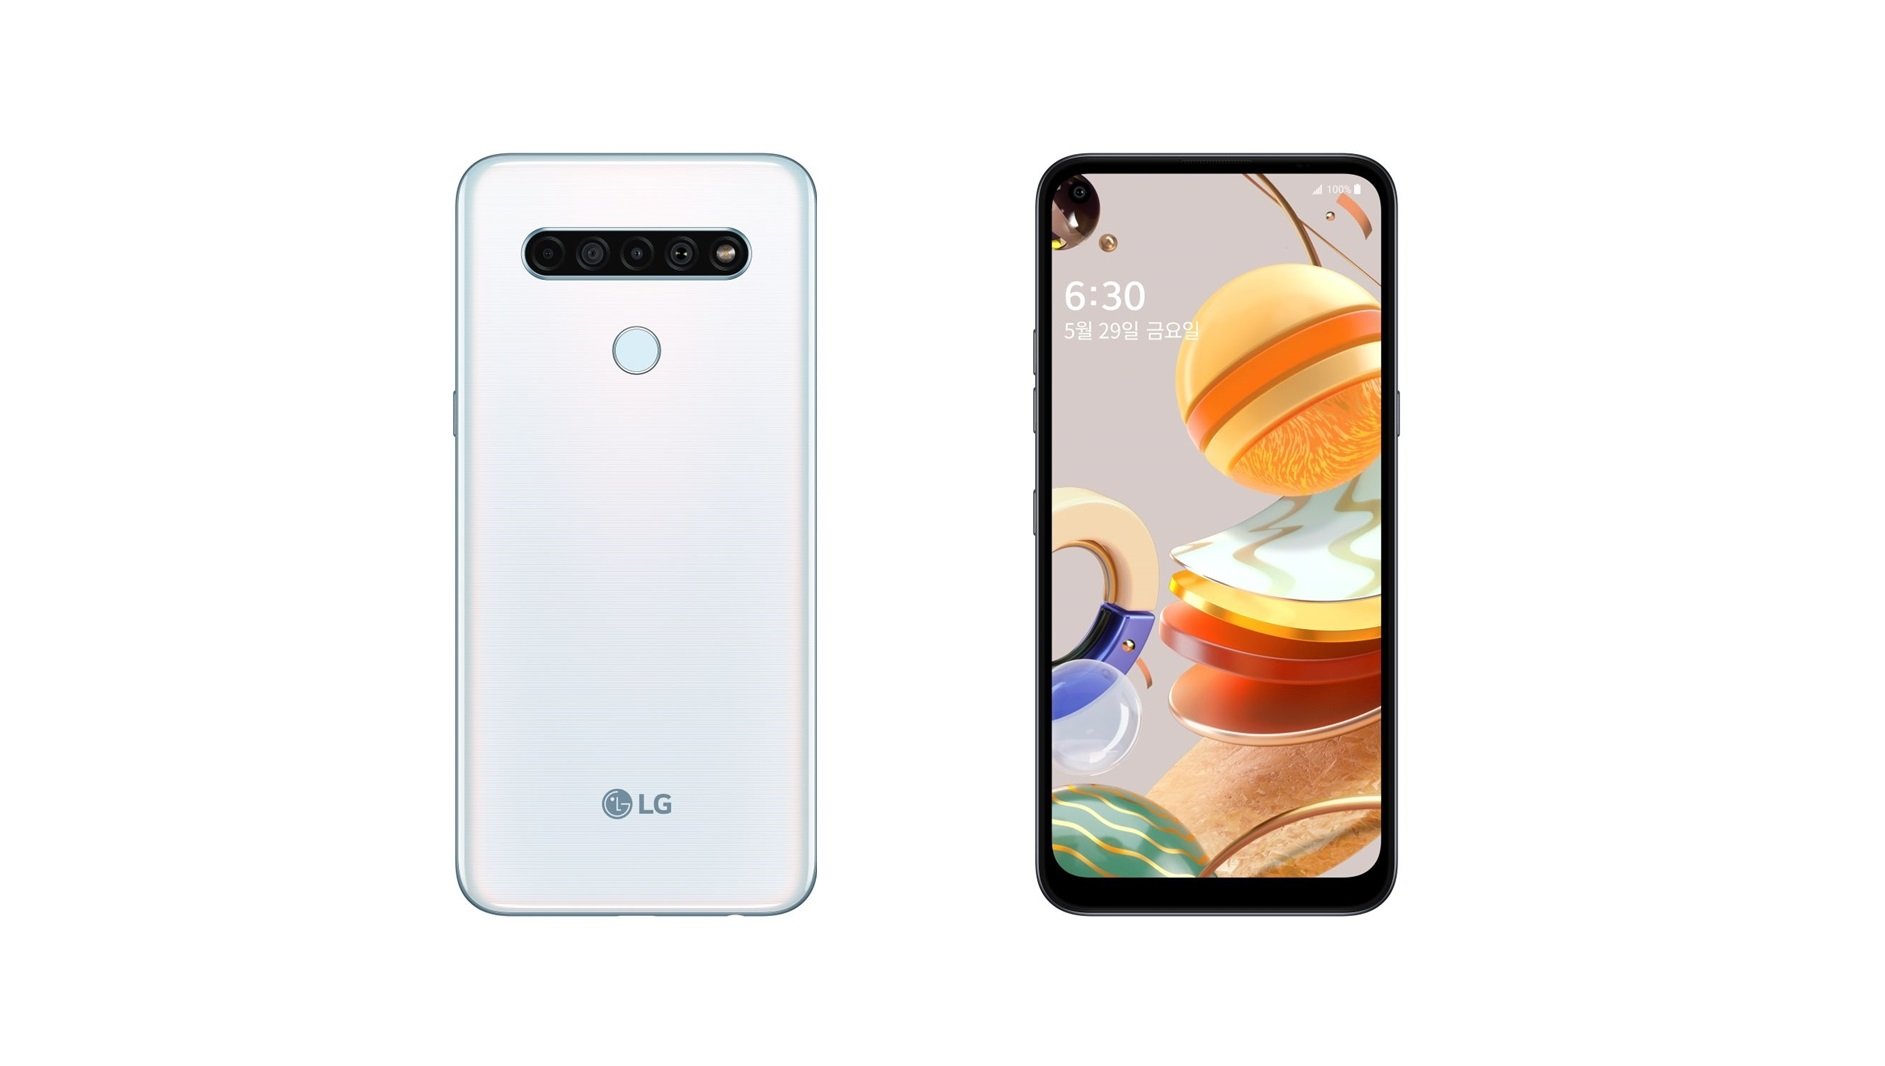 LG Q61 smartphone